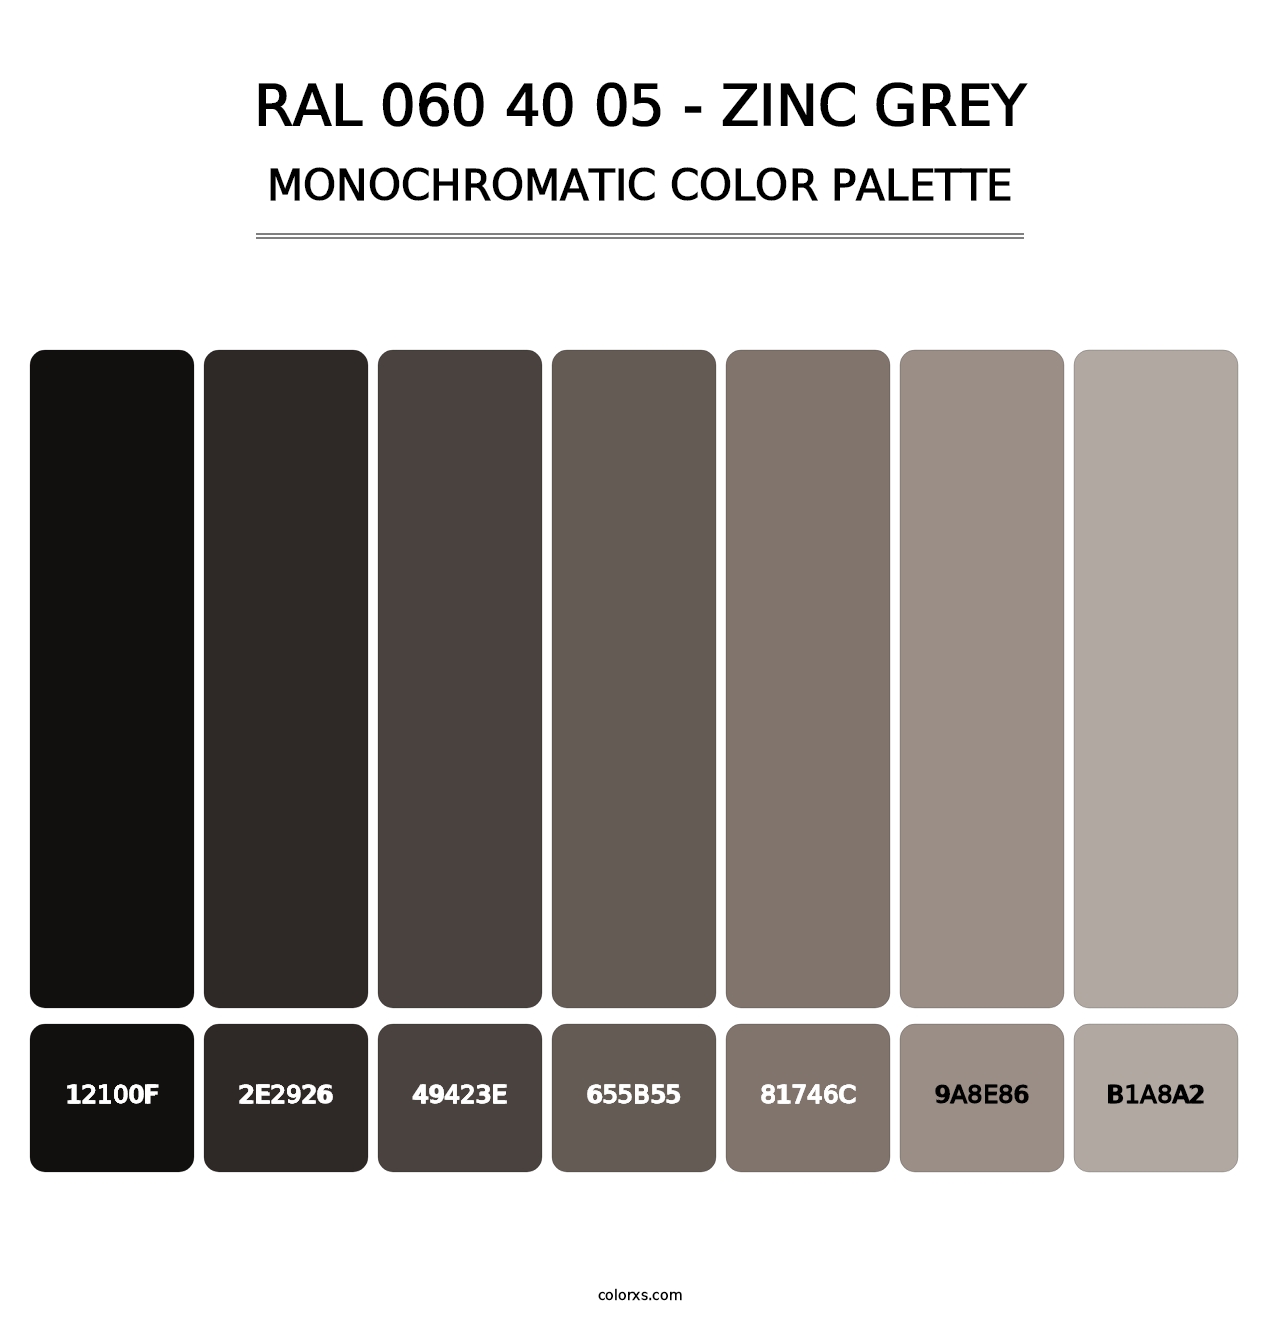 RAL 060 40 05 - Zinc Grey - Monochromatic Color Palette